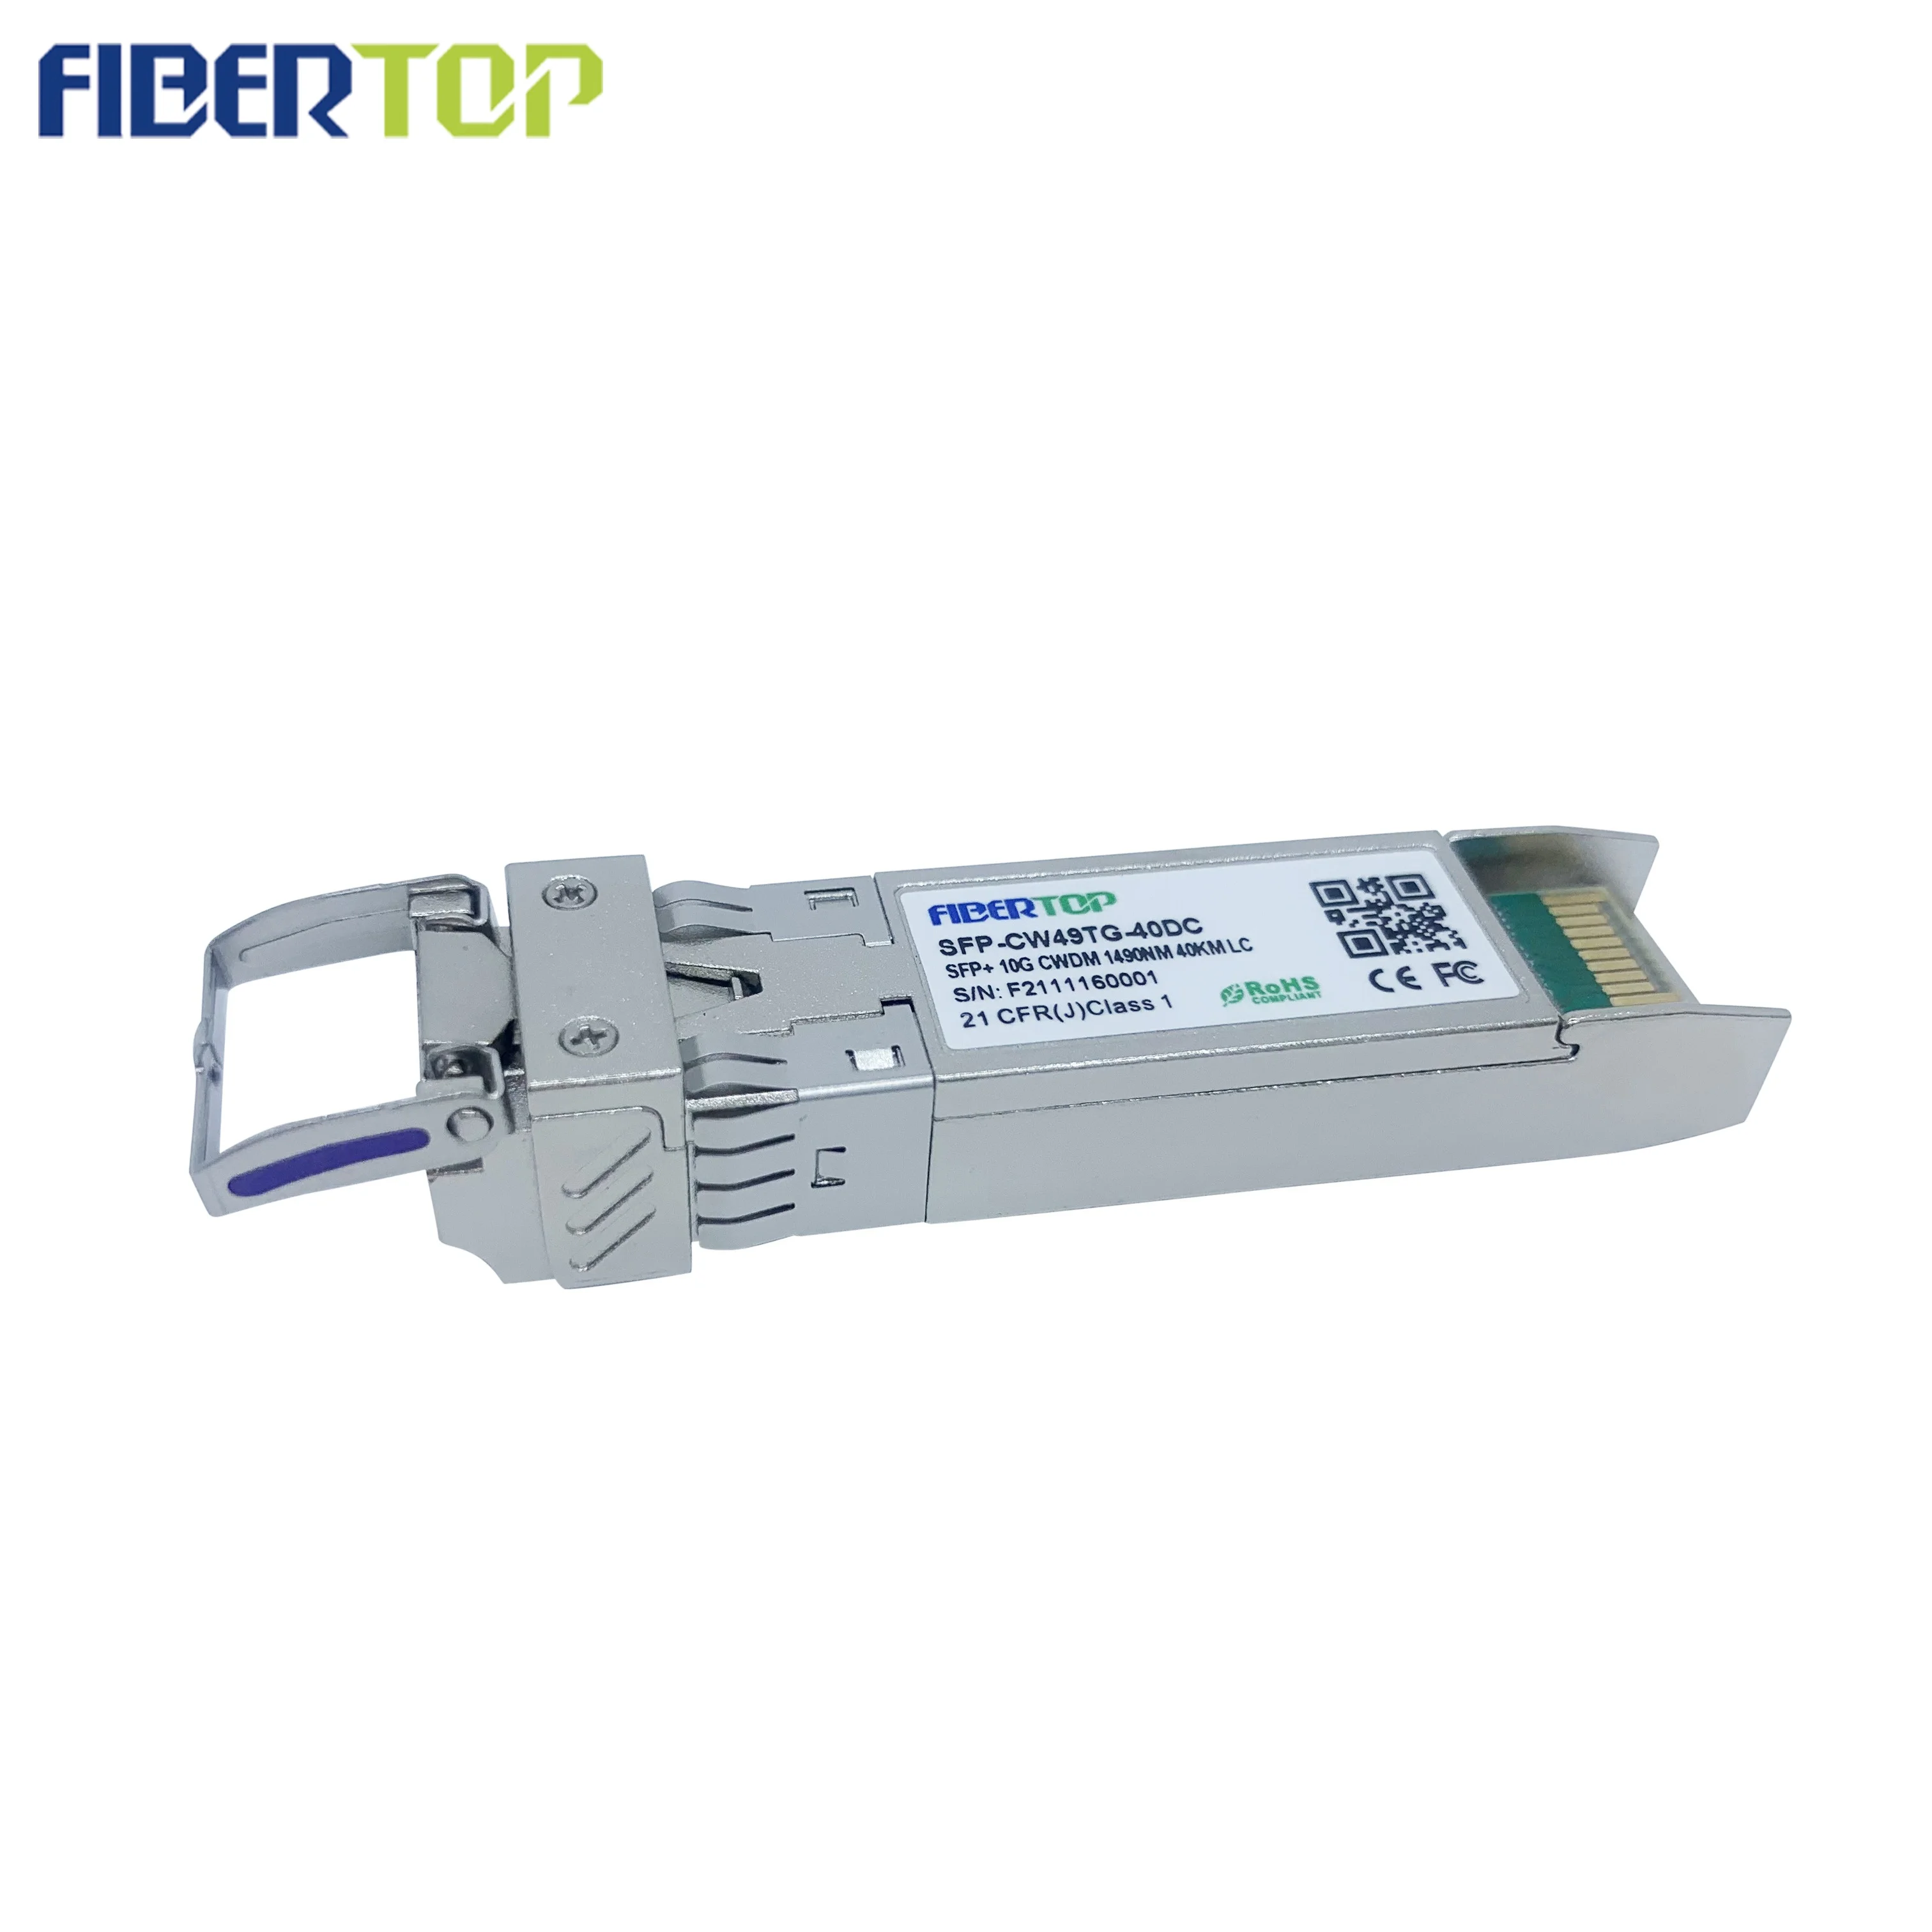 FİBERTOP 10g cwdm sfp + optik modül en iyi fiber optik internet doğrudan bağlantılı alıcı-verici Görüntü 2